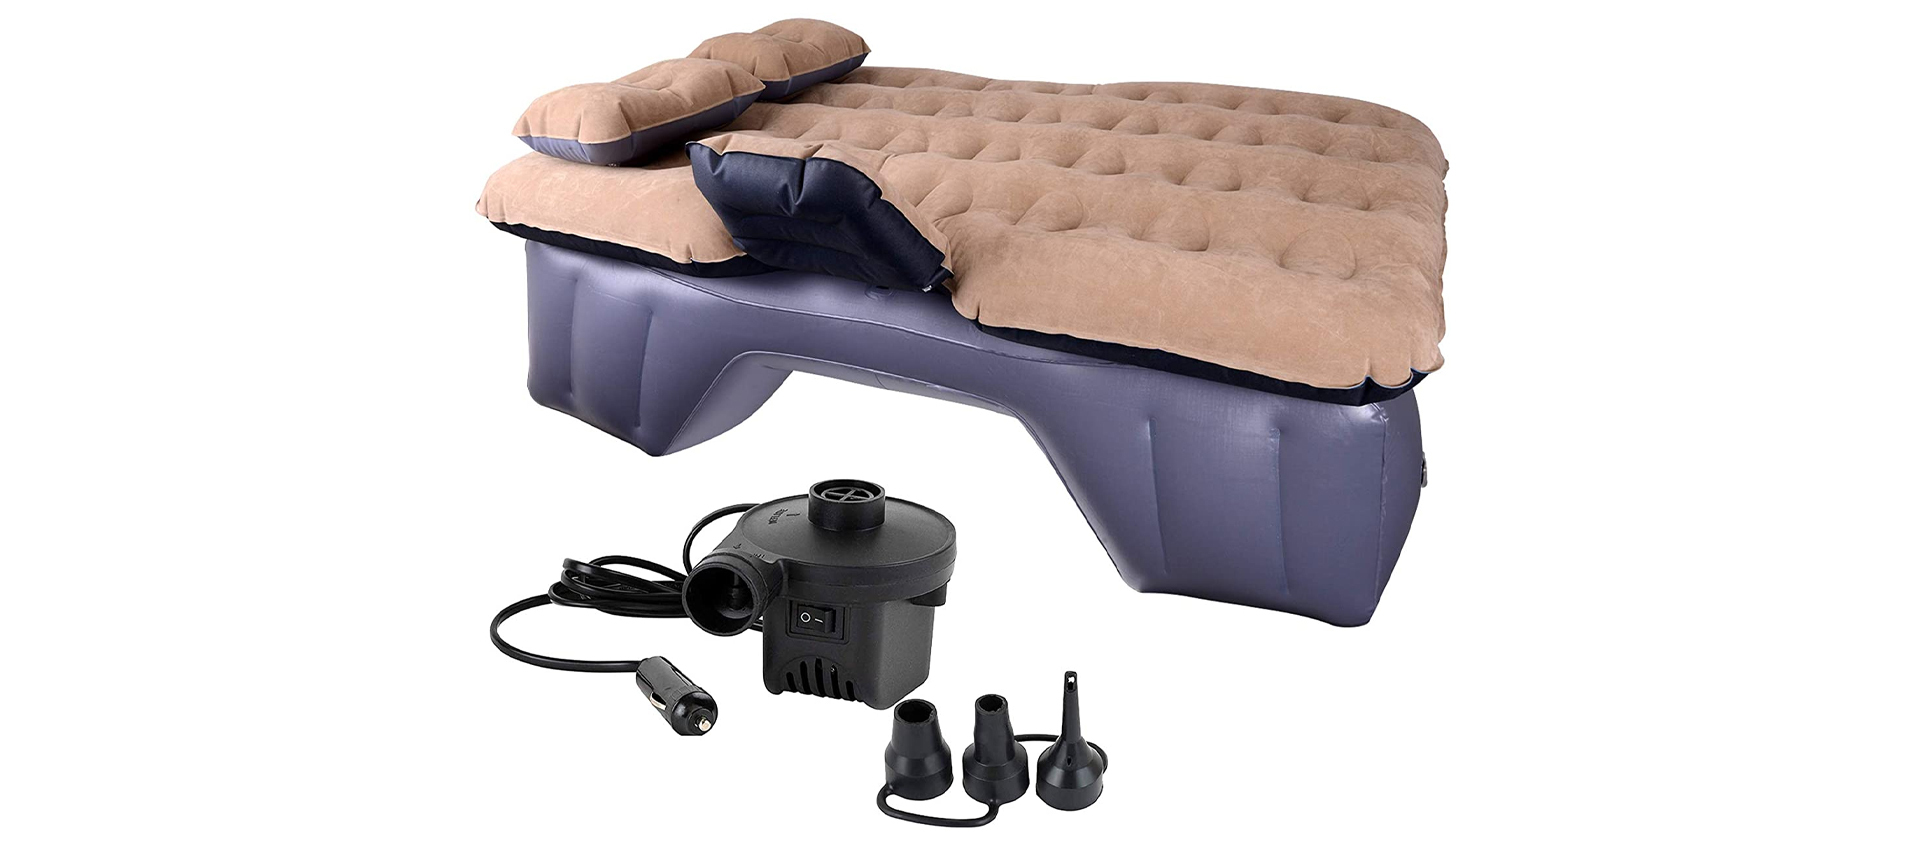 air mattress for car canada